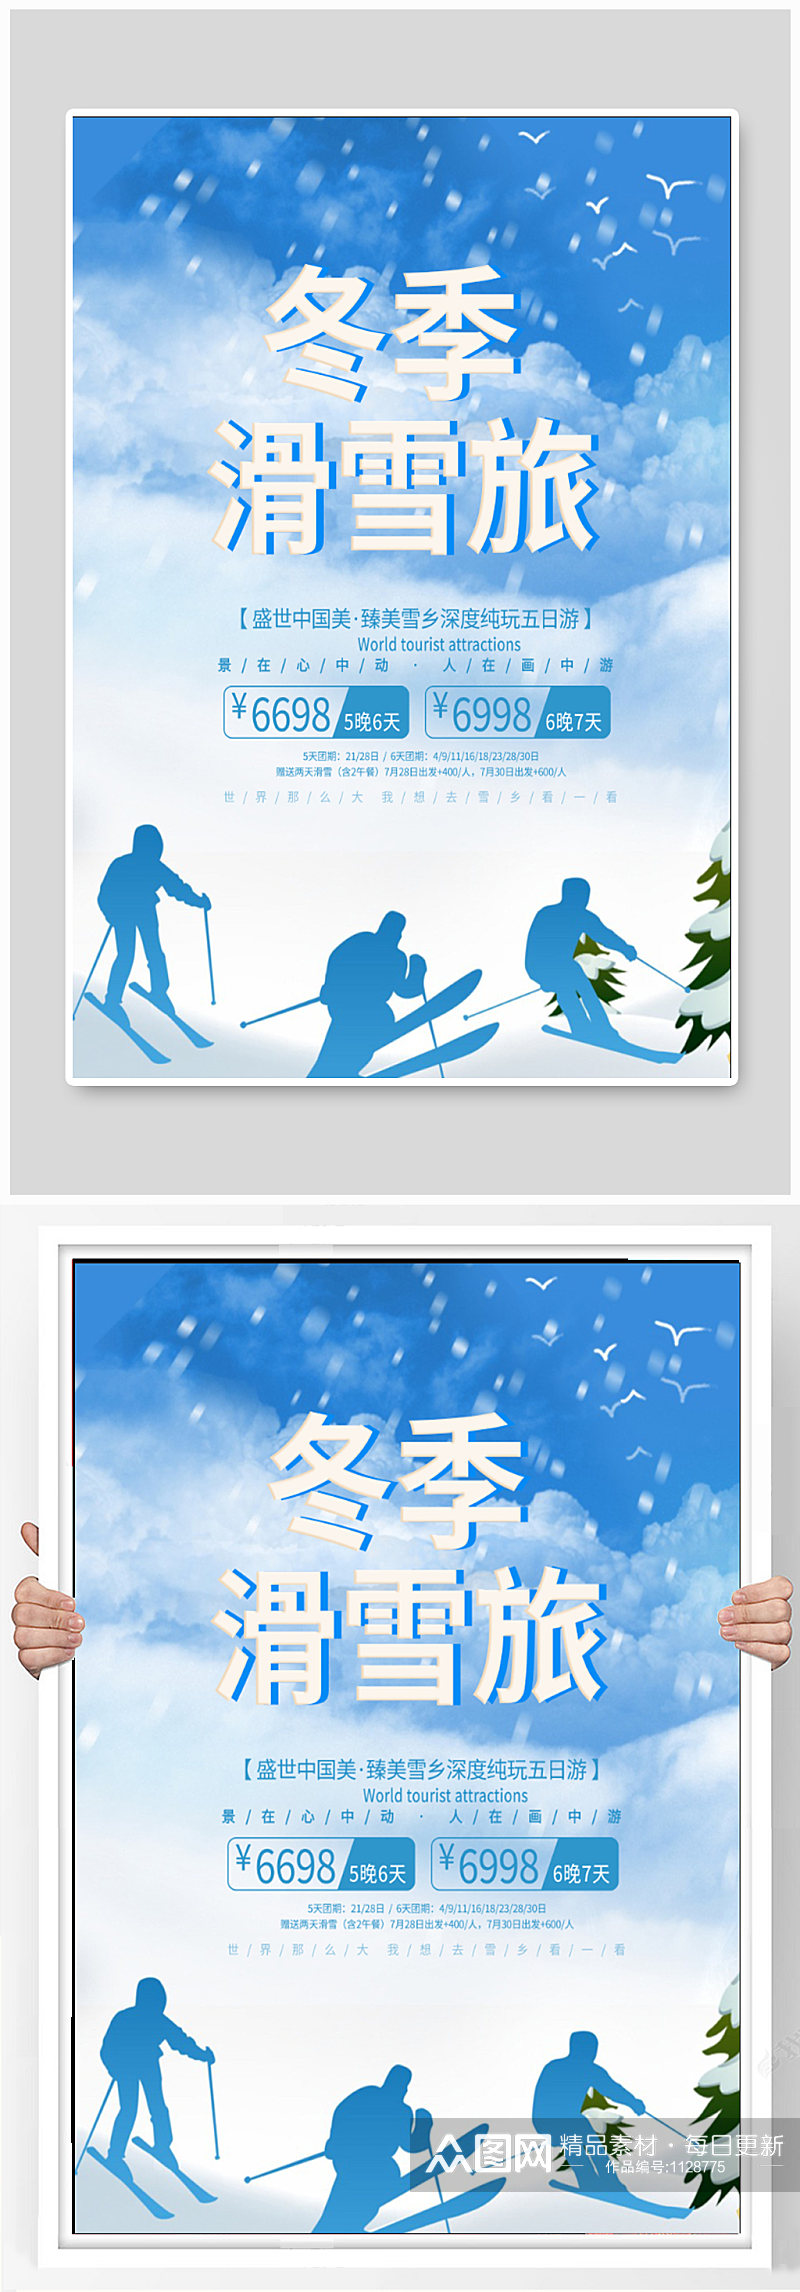 冬季滑雪旅游海报素材